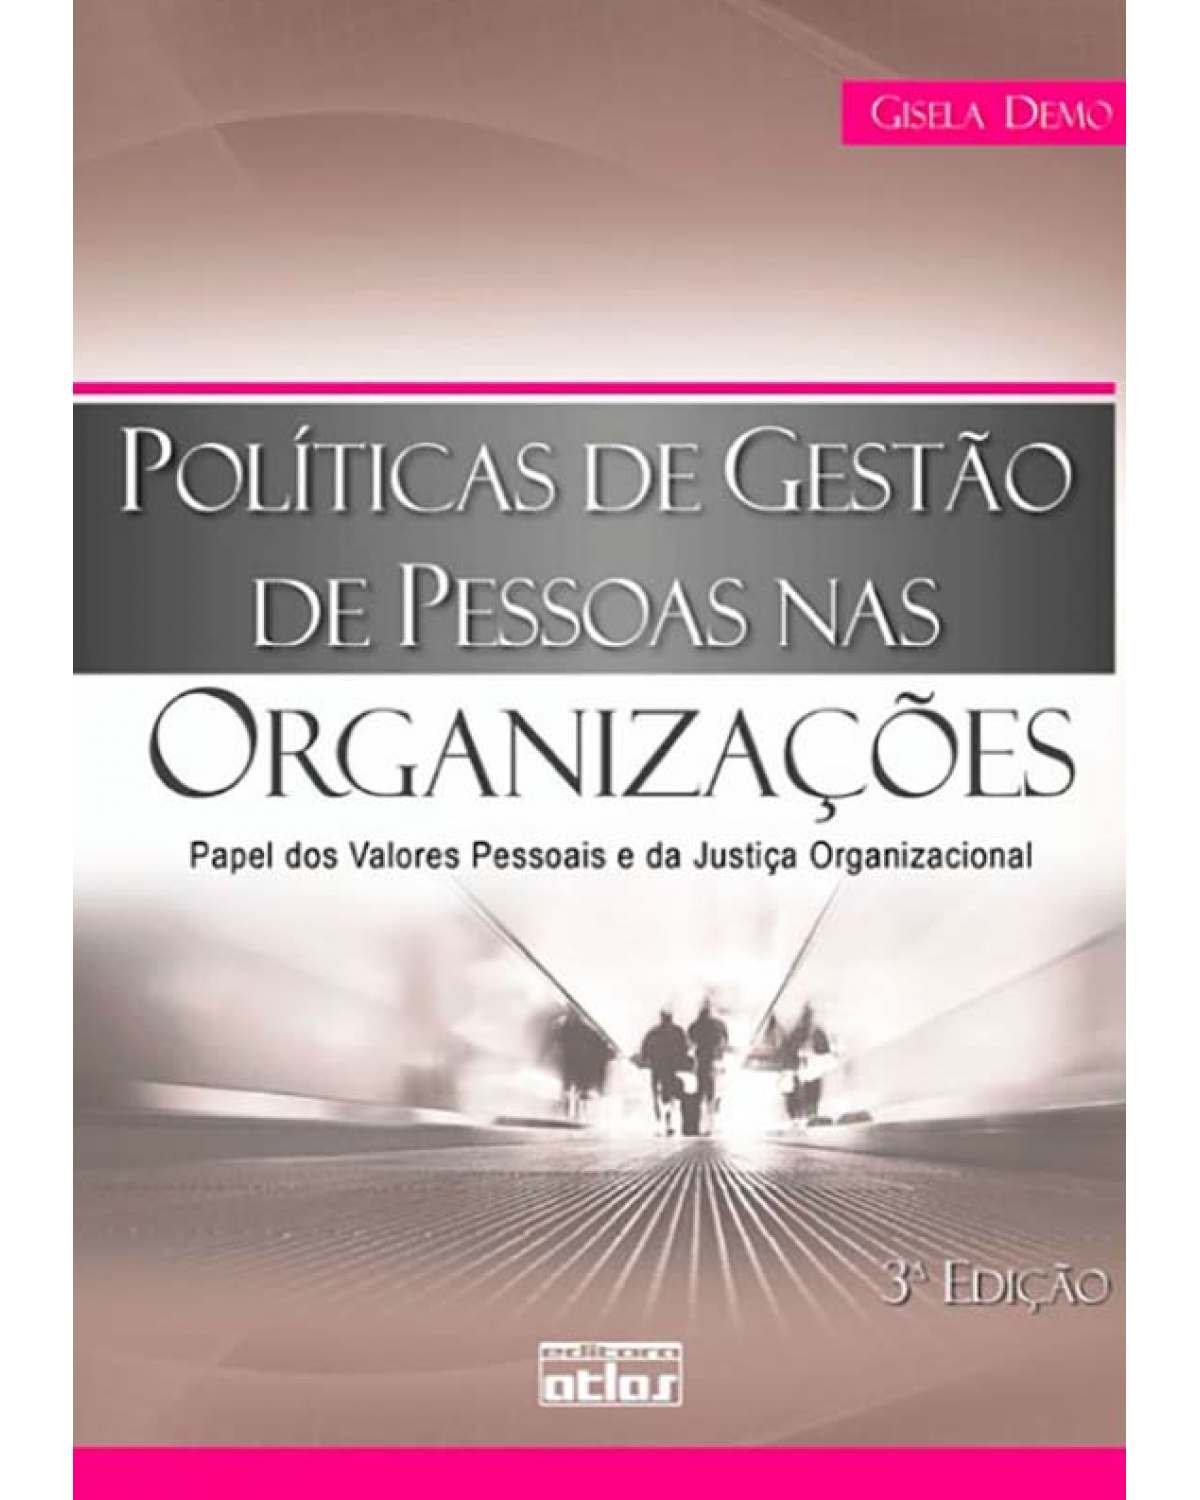 Políticas de gestão de pessoas nas organizações - 3ª Edição | 2010